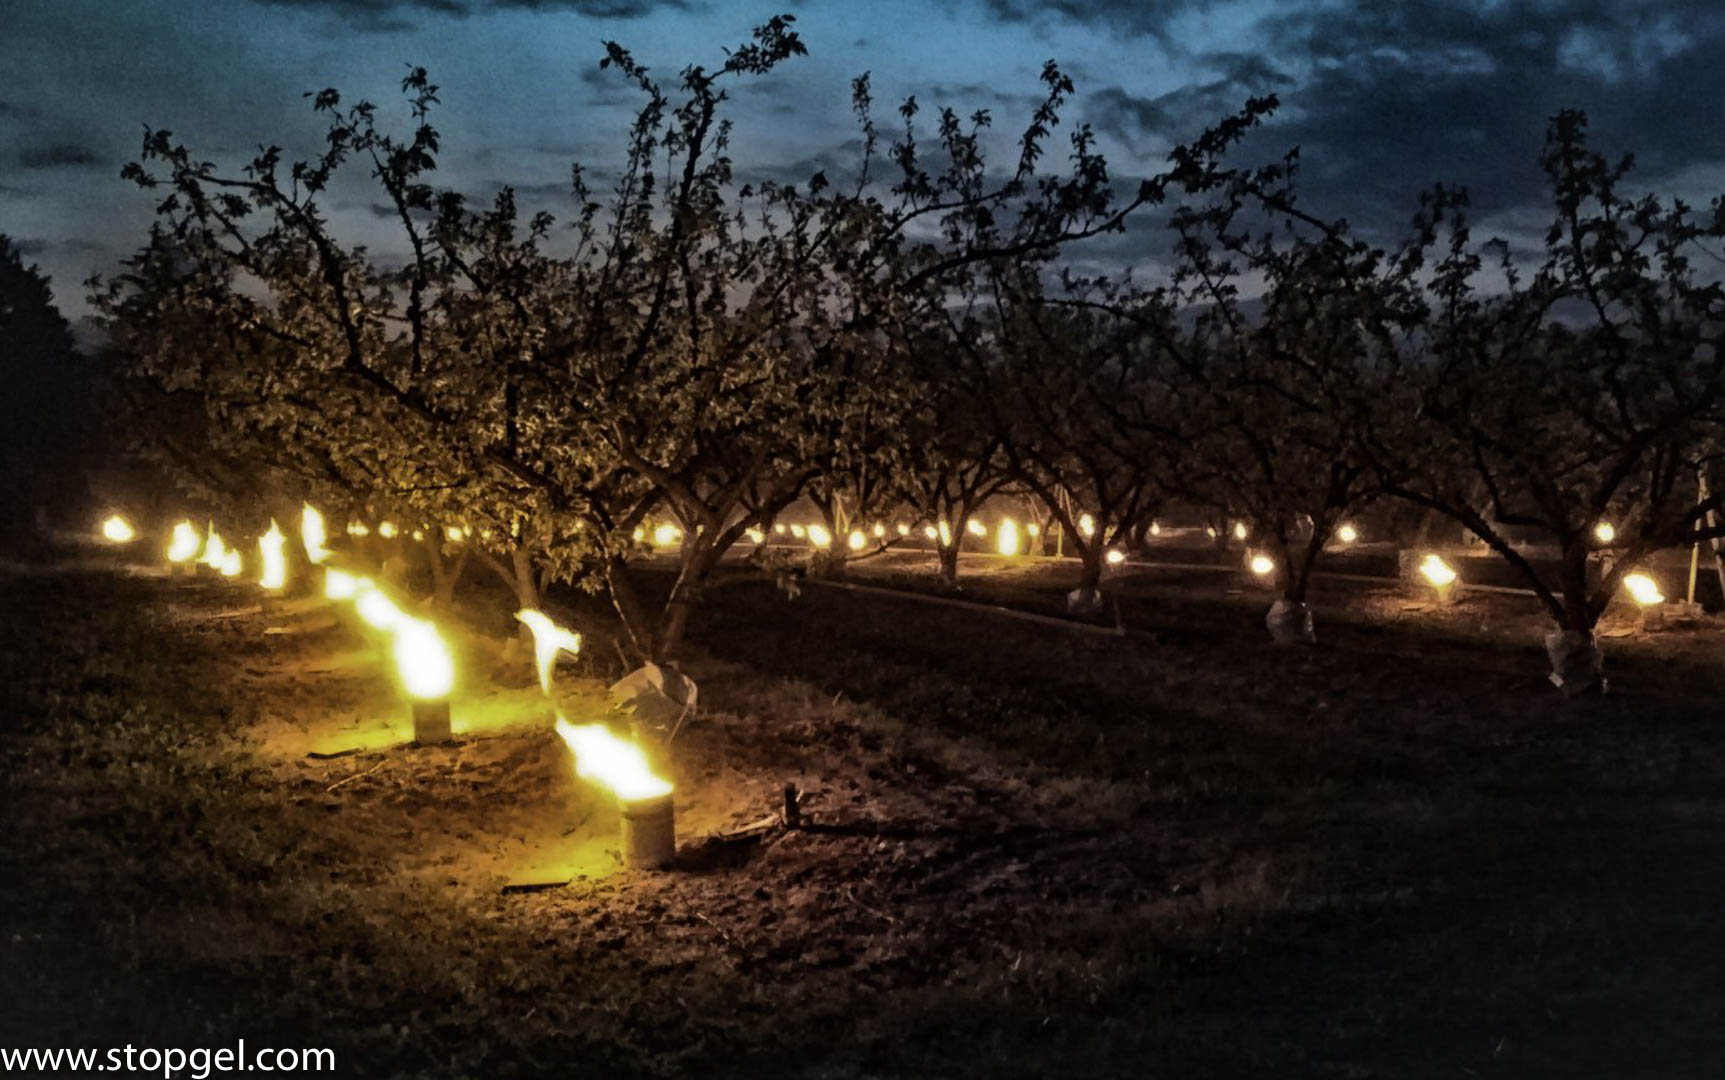 STOPGEL VERDE in un campo di alberi da frutto produce il 50% in più di energia rispetto ad altre candele